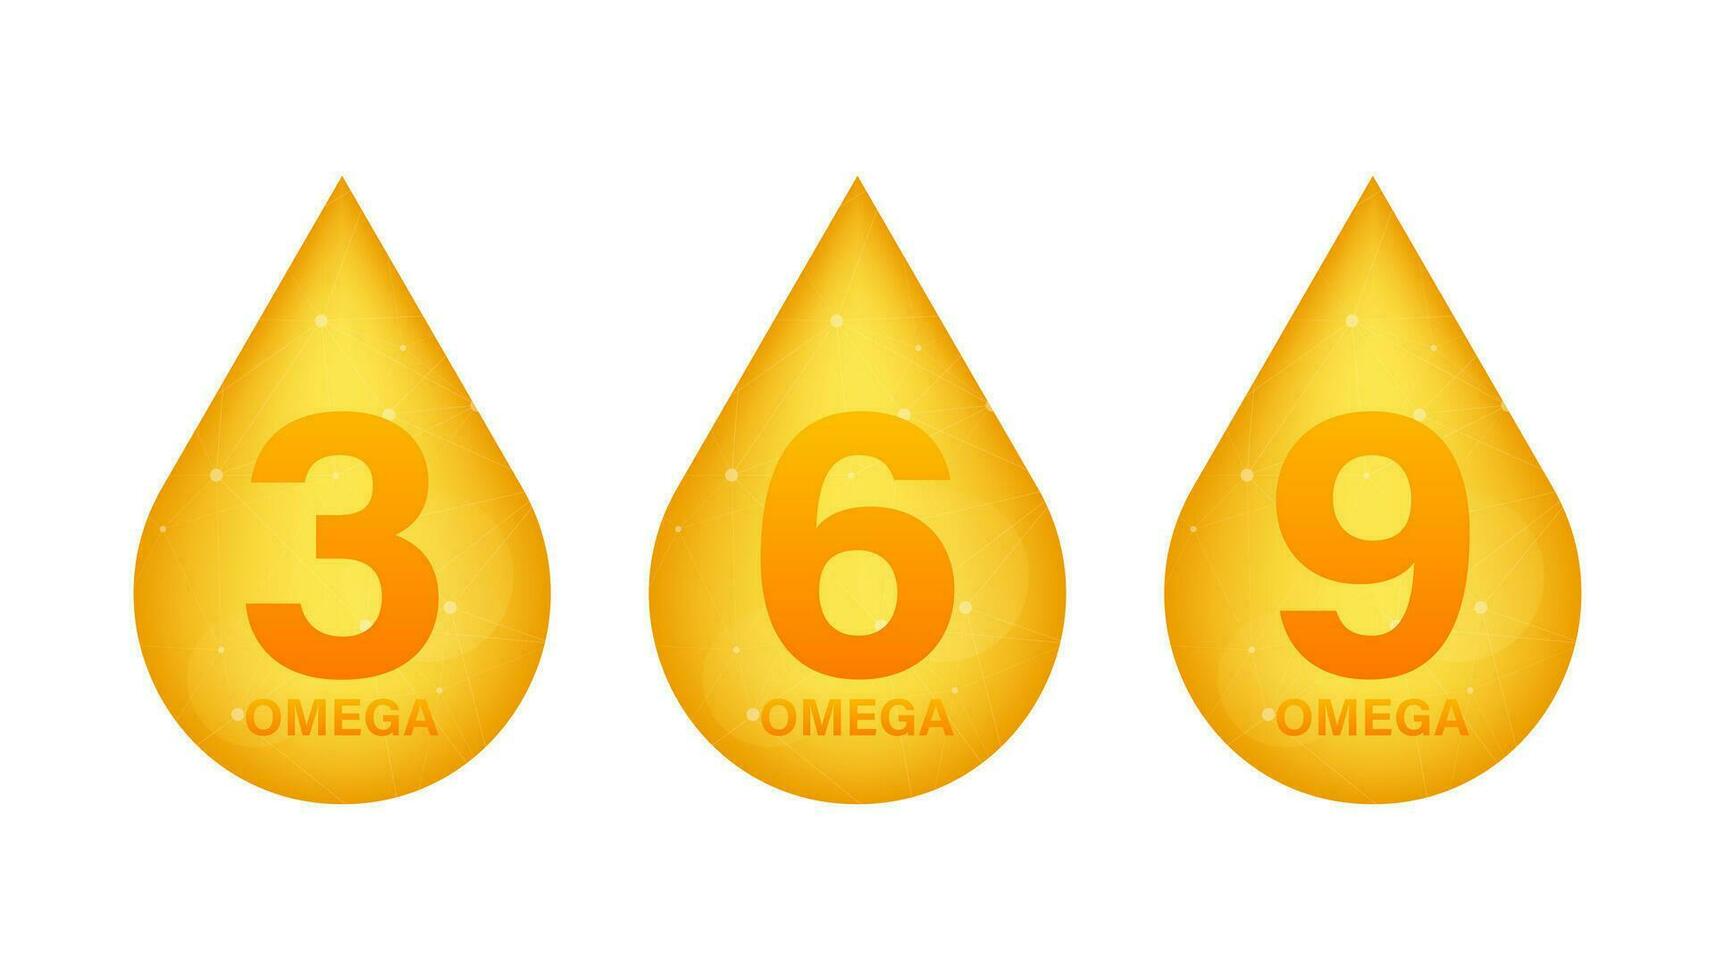 omega 3, 6, 9, oro icono. vitamina soltar píldora cápsula. brillante dorado esencia gotita vector ilustración